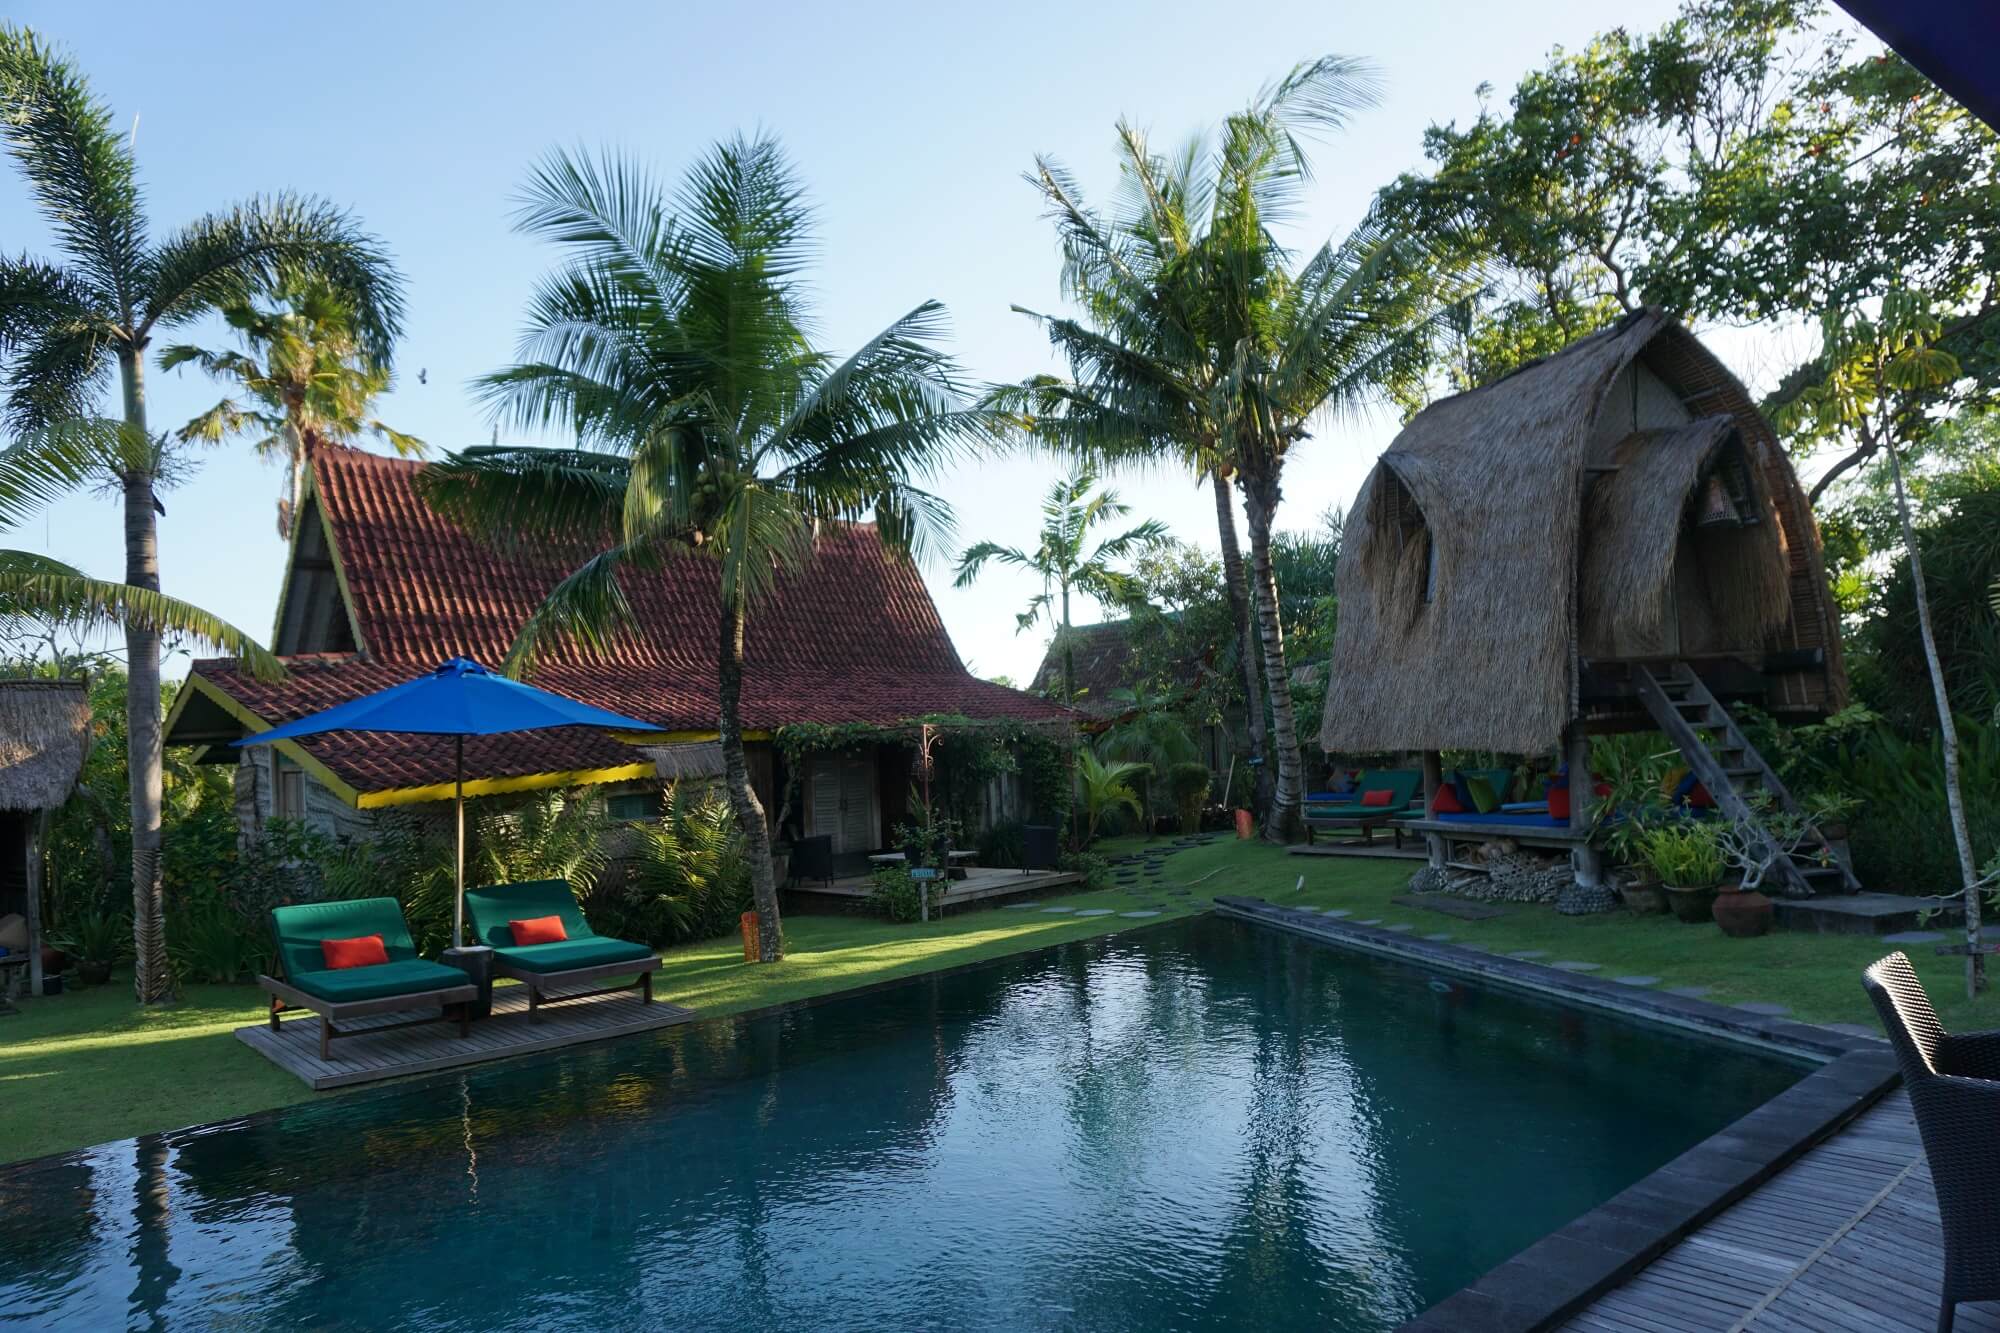 Desa Seni yoga retreat in Canggu, Bali